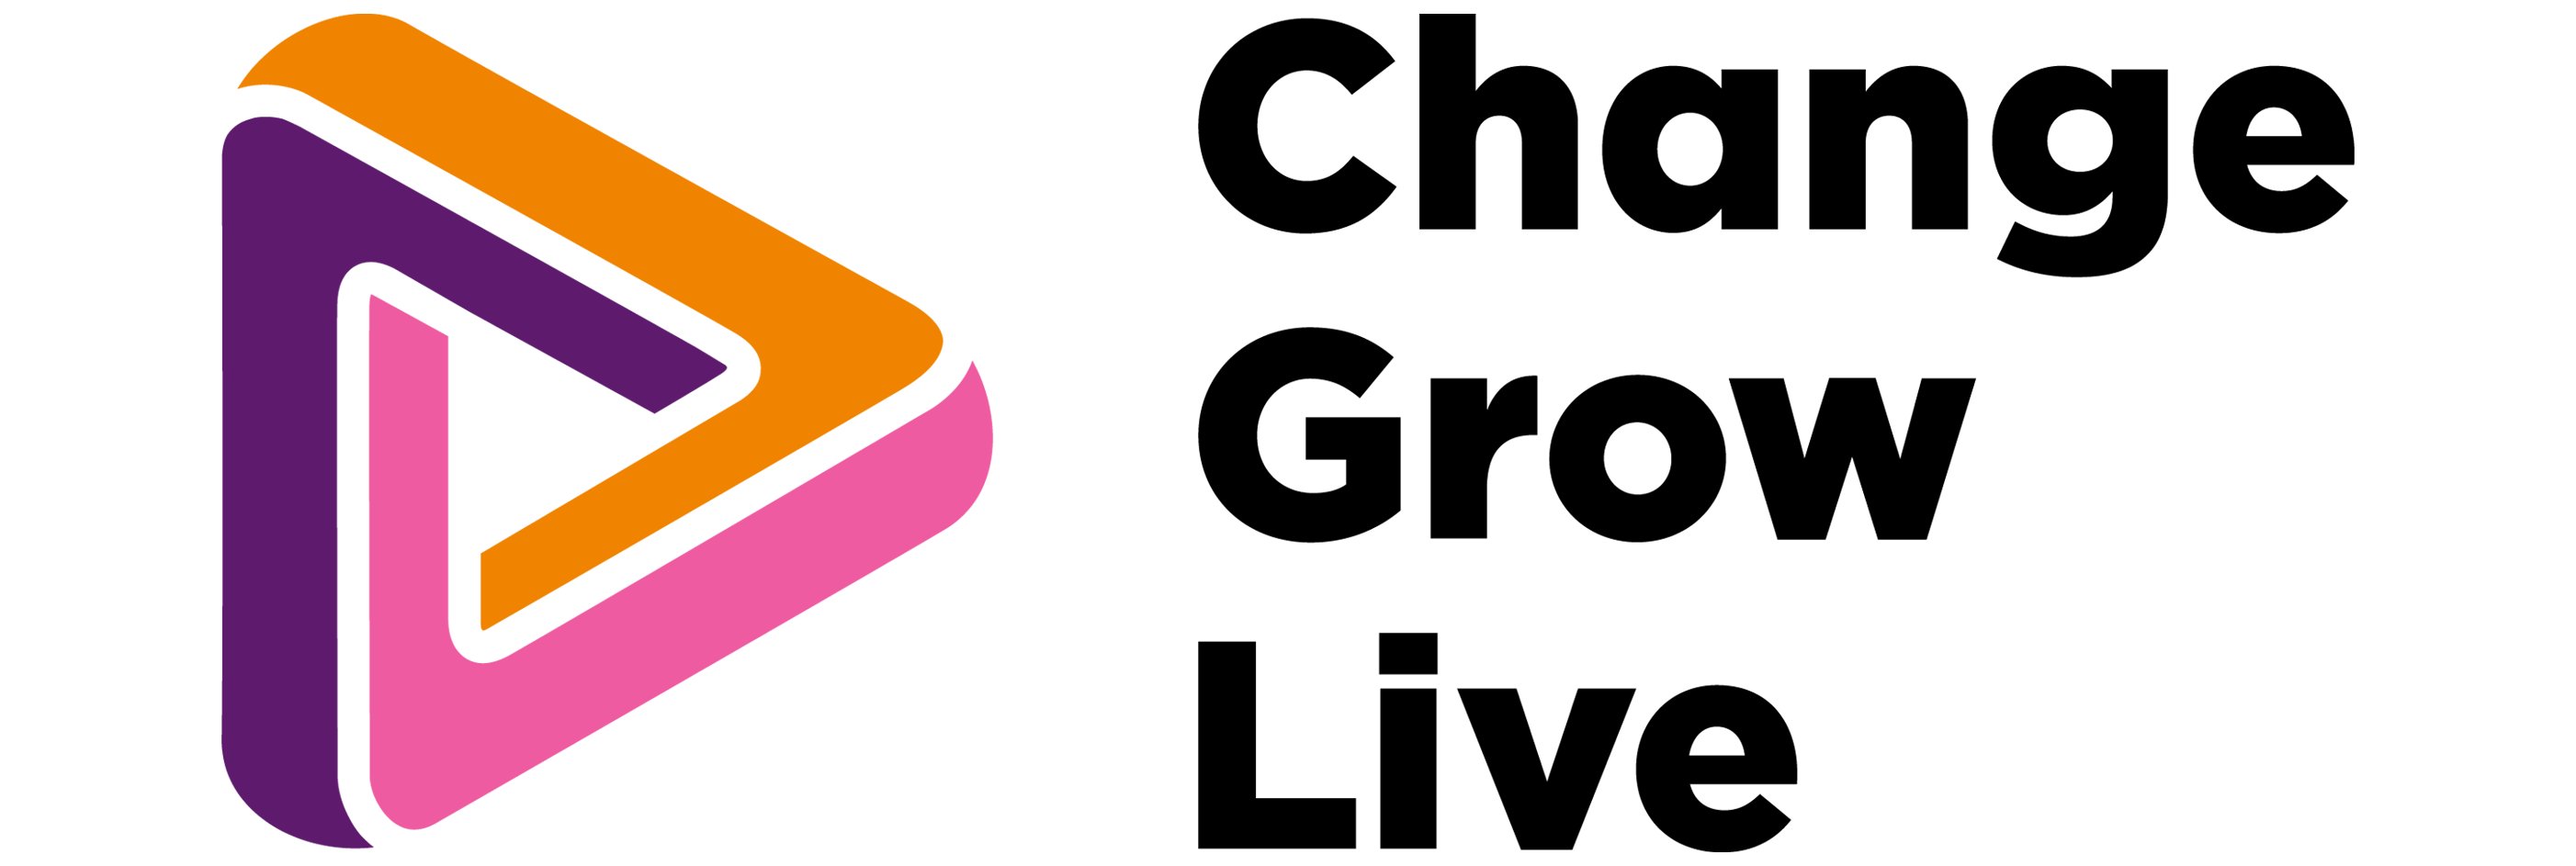 Barnet logo